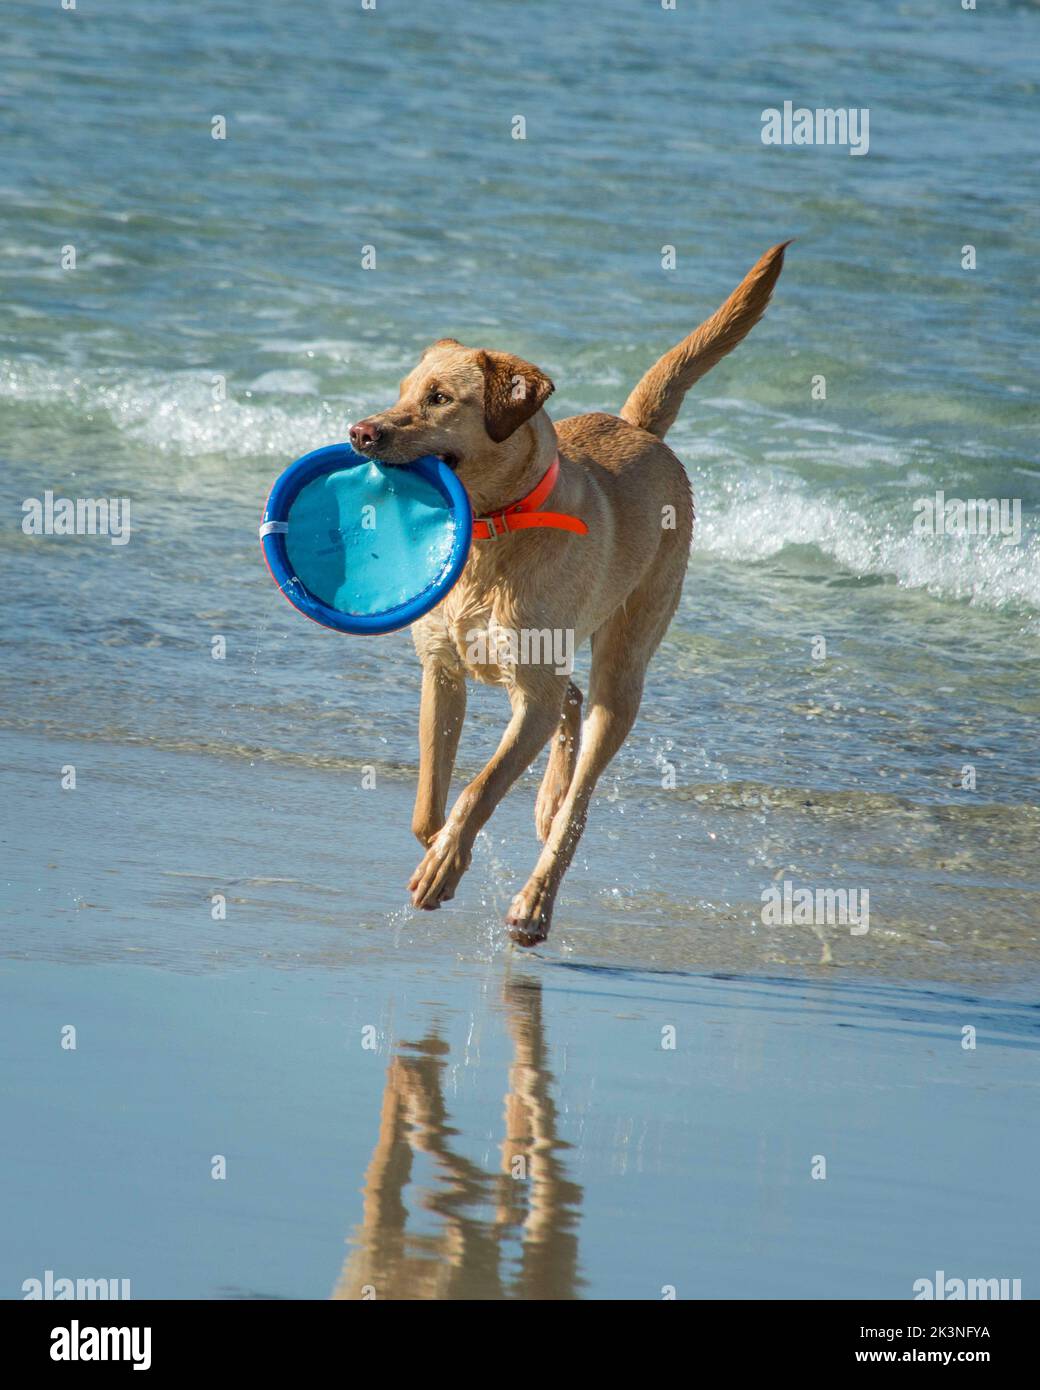 Dogs at the Beach - le temps de jeu à la plage pour les chiens heureux. Les chiens sont en train de courir, de sauter, de courir le long du sable et de l'eau avec la liberté sauvage. Banque D'Images